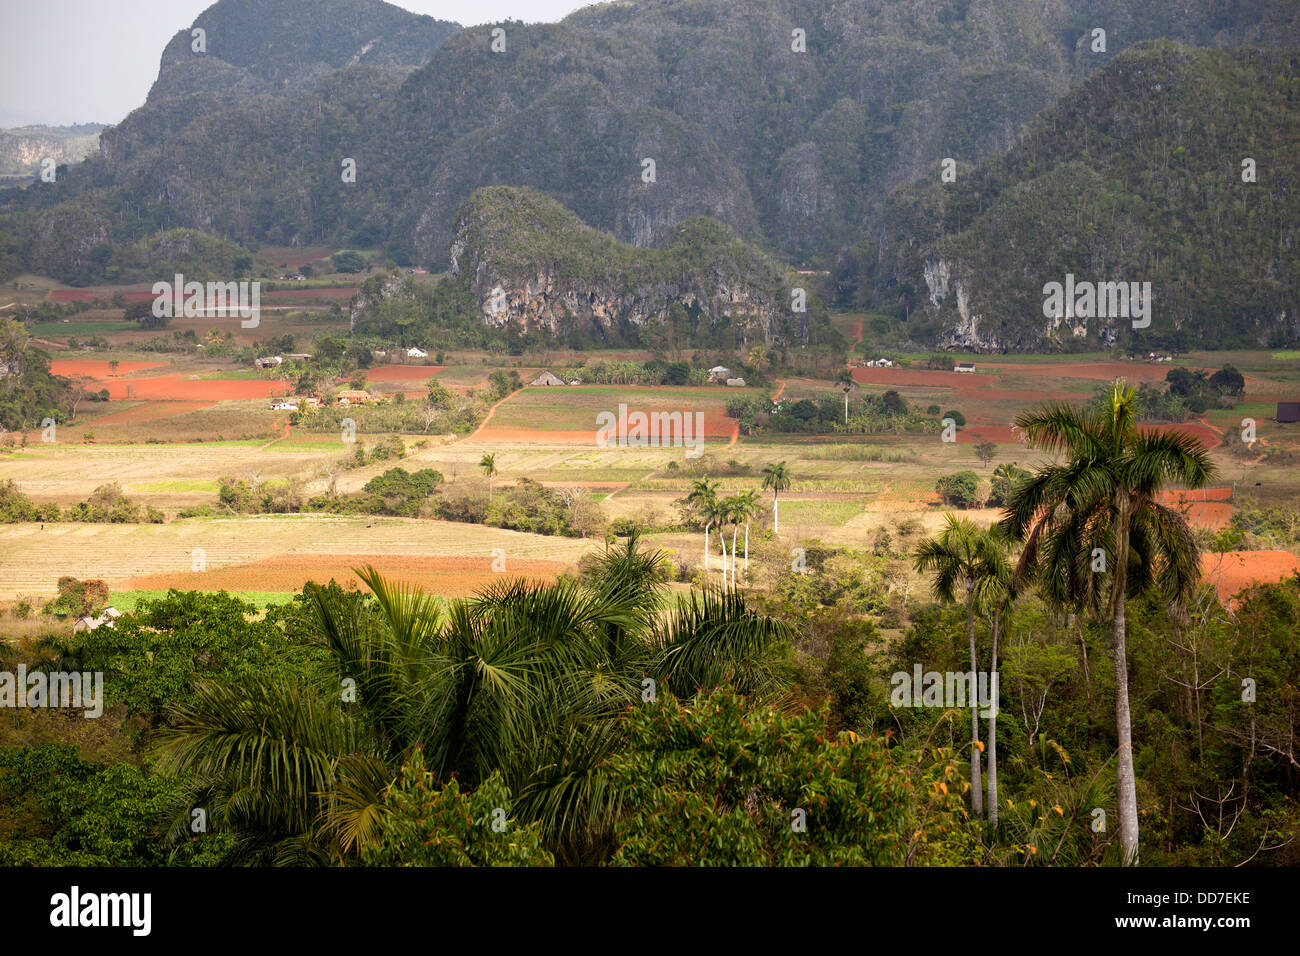 Paisaje cárstico con campos de tabaco en el Valle de Viñales, Viñales, Pinar del Río, Cuba, El Caribe Foto de stock